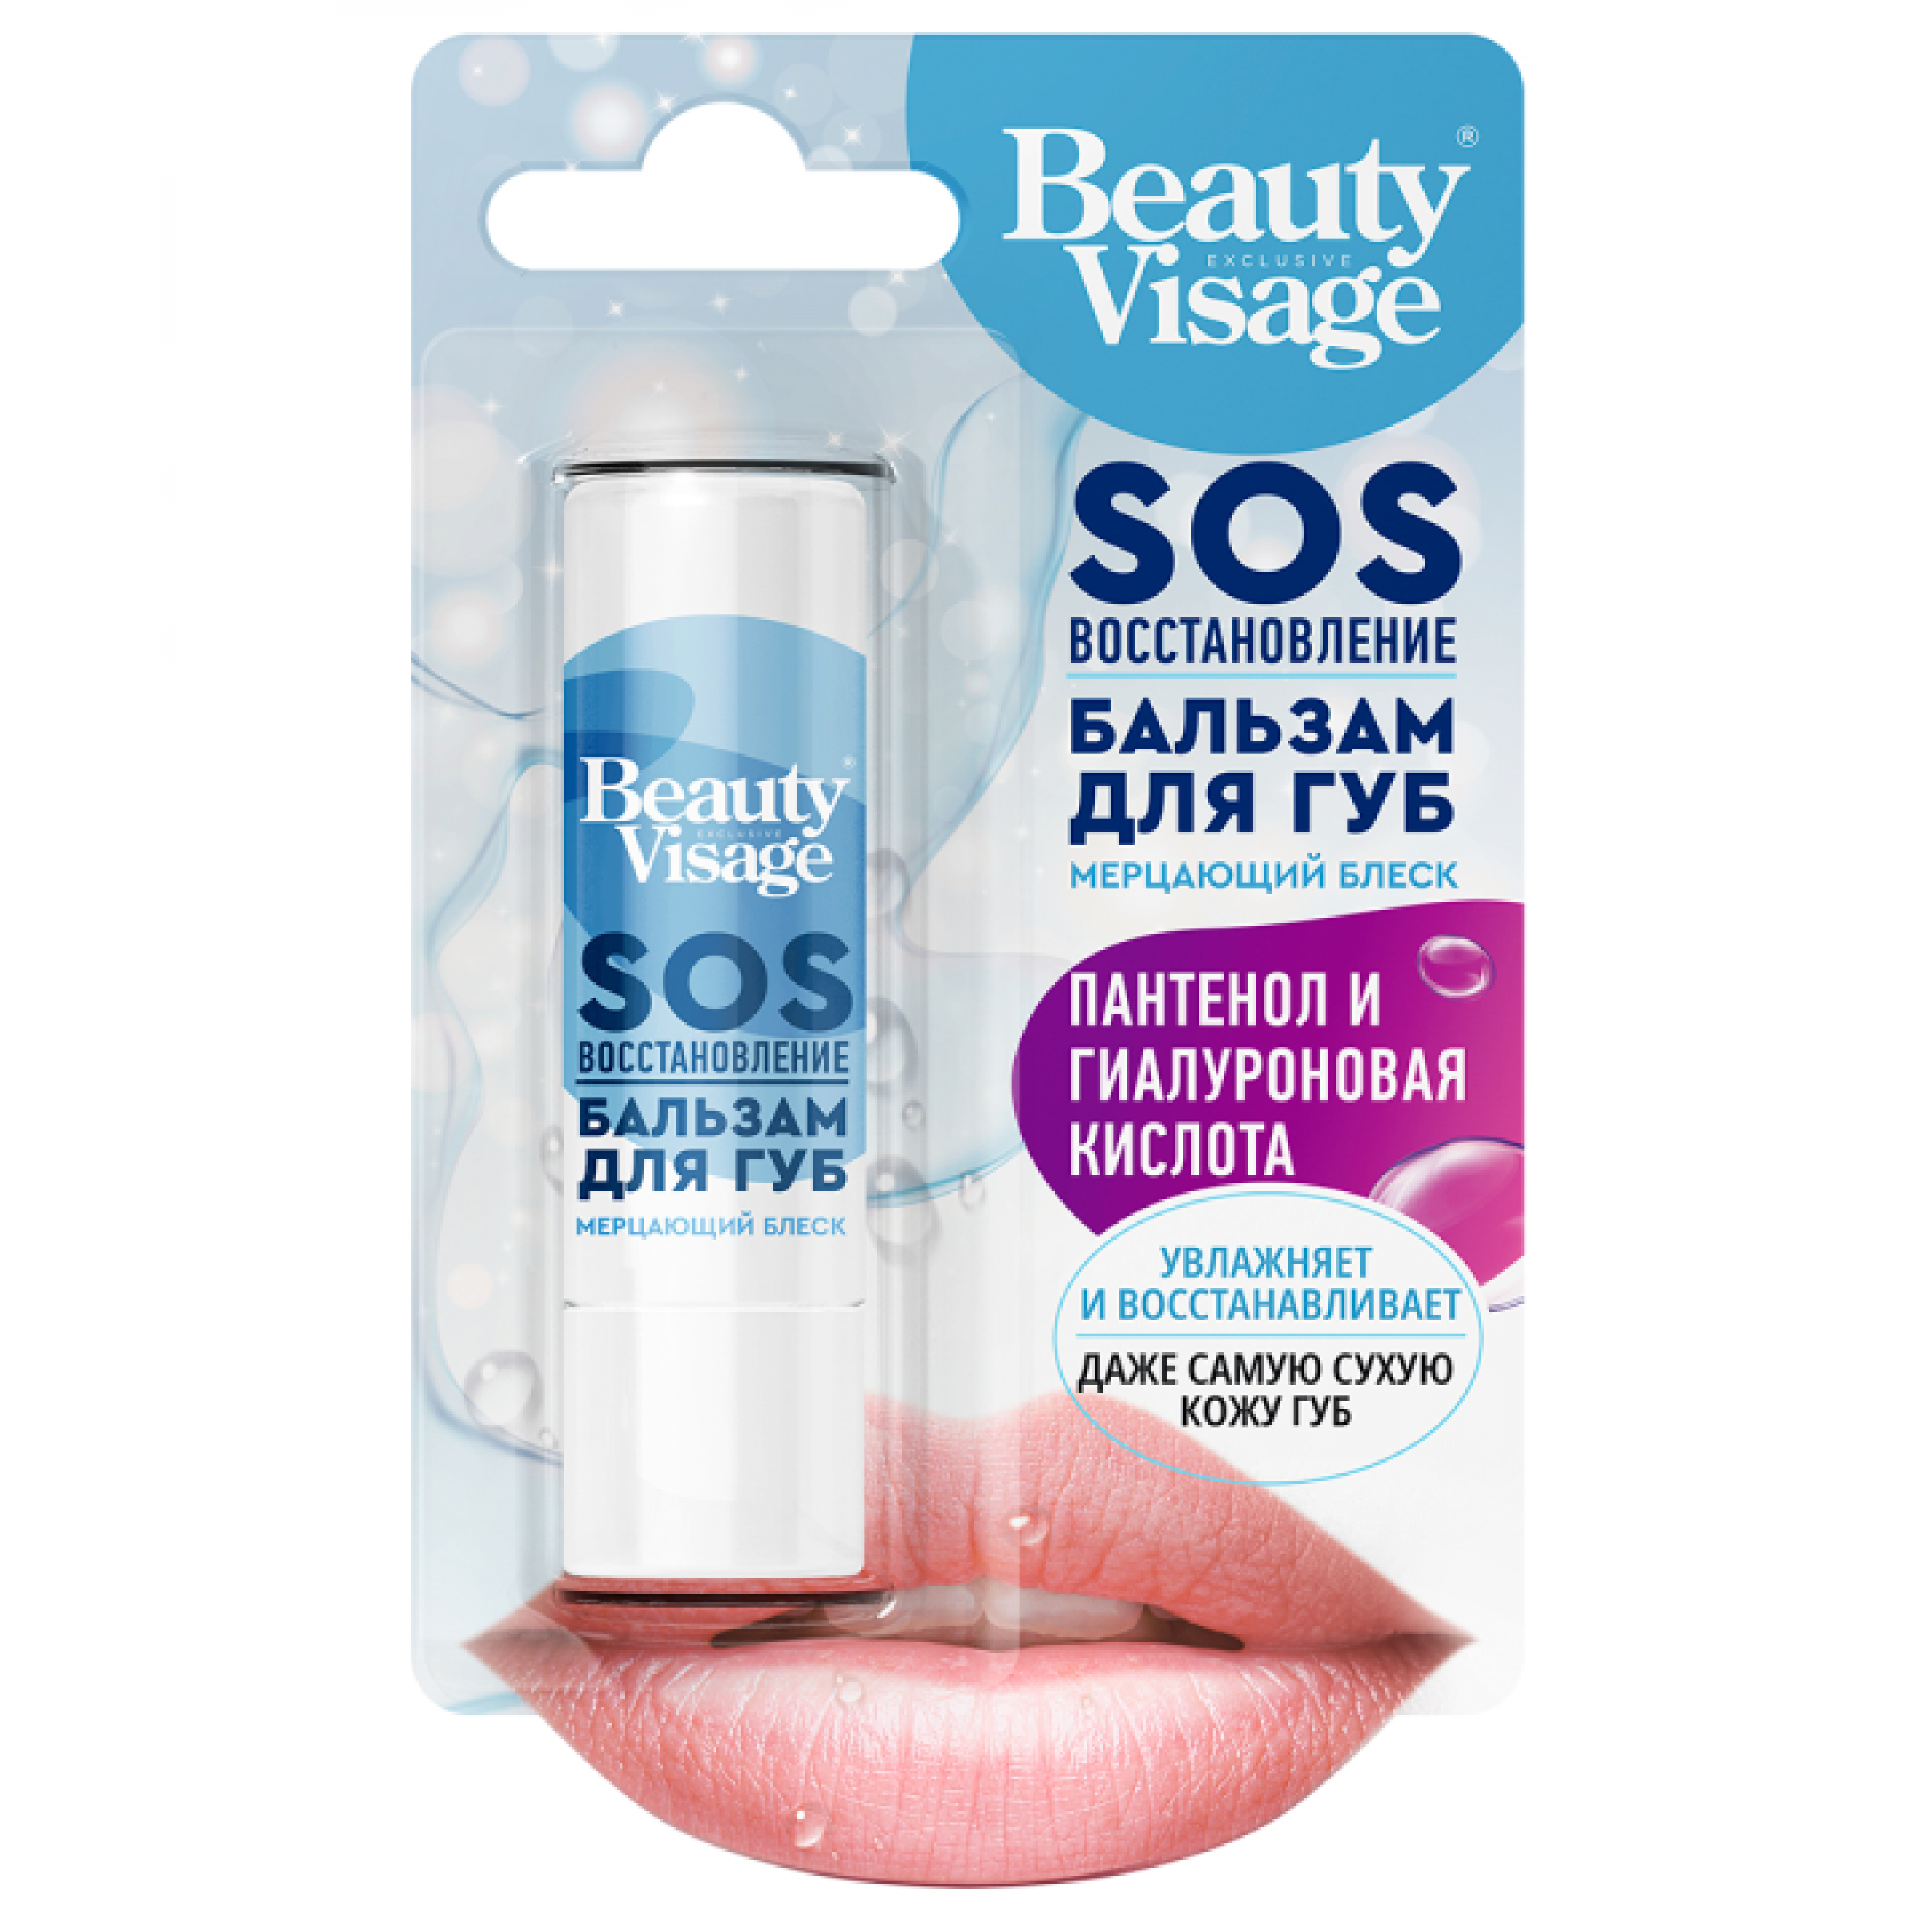 Бальзам для губ SOS Восстановление Beauty Visage, 1 шт